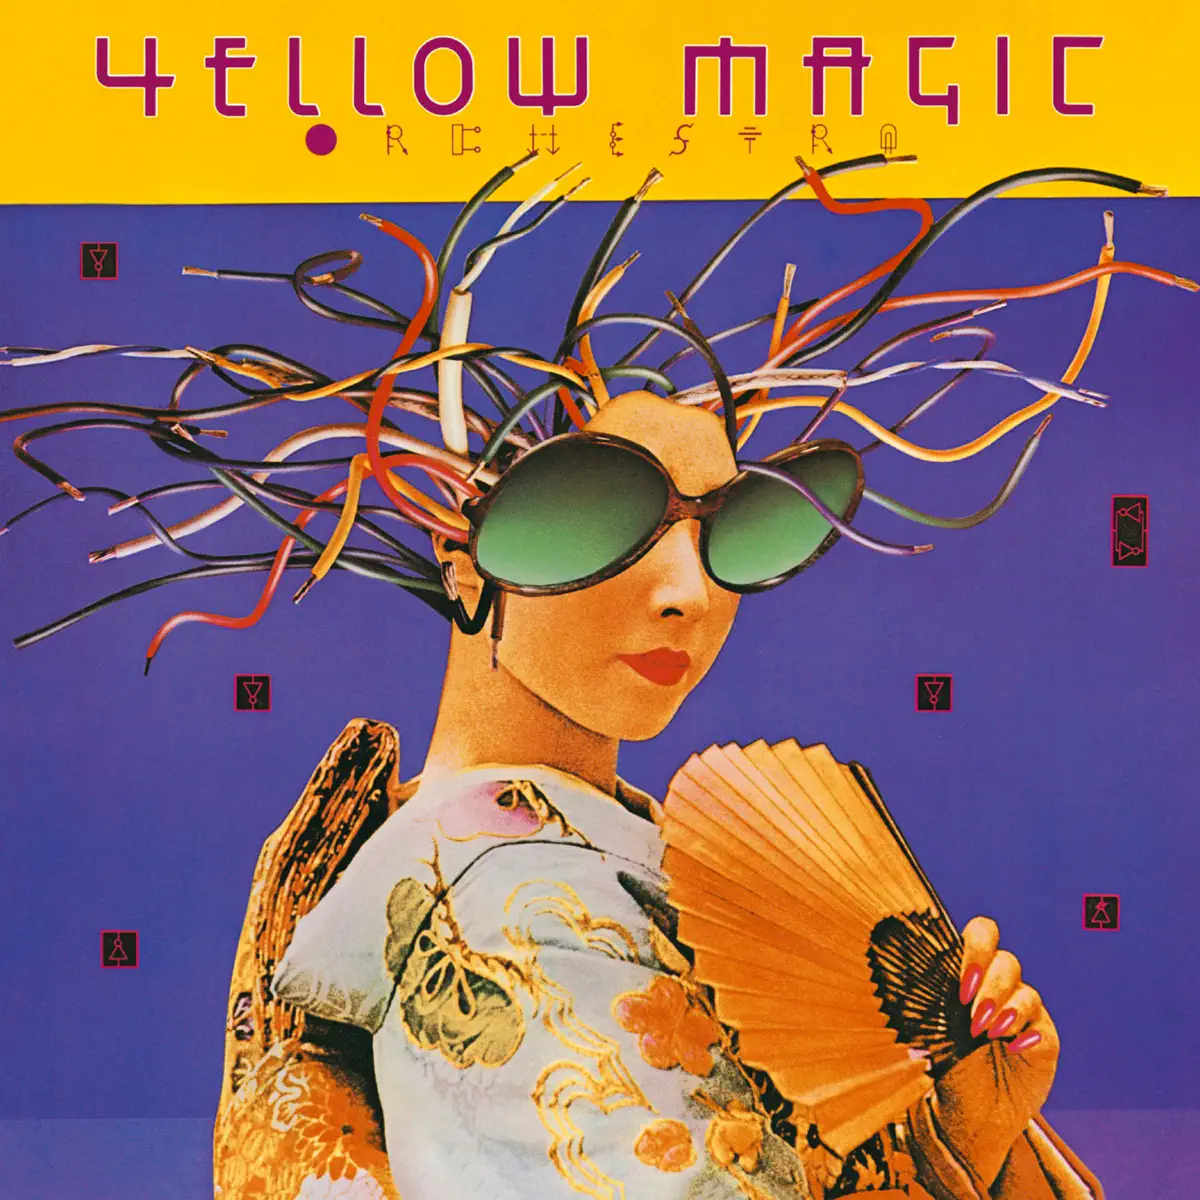 Yellow Magic Orchestra - Yellow Magic Orchestra (US Version) (1979) [iTunes Plus AAC M4A]-新房子